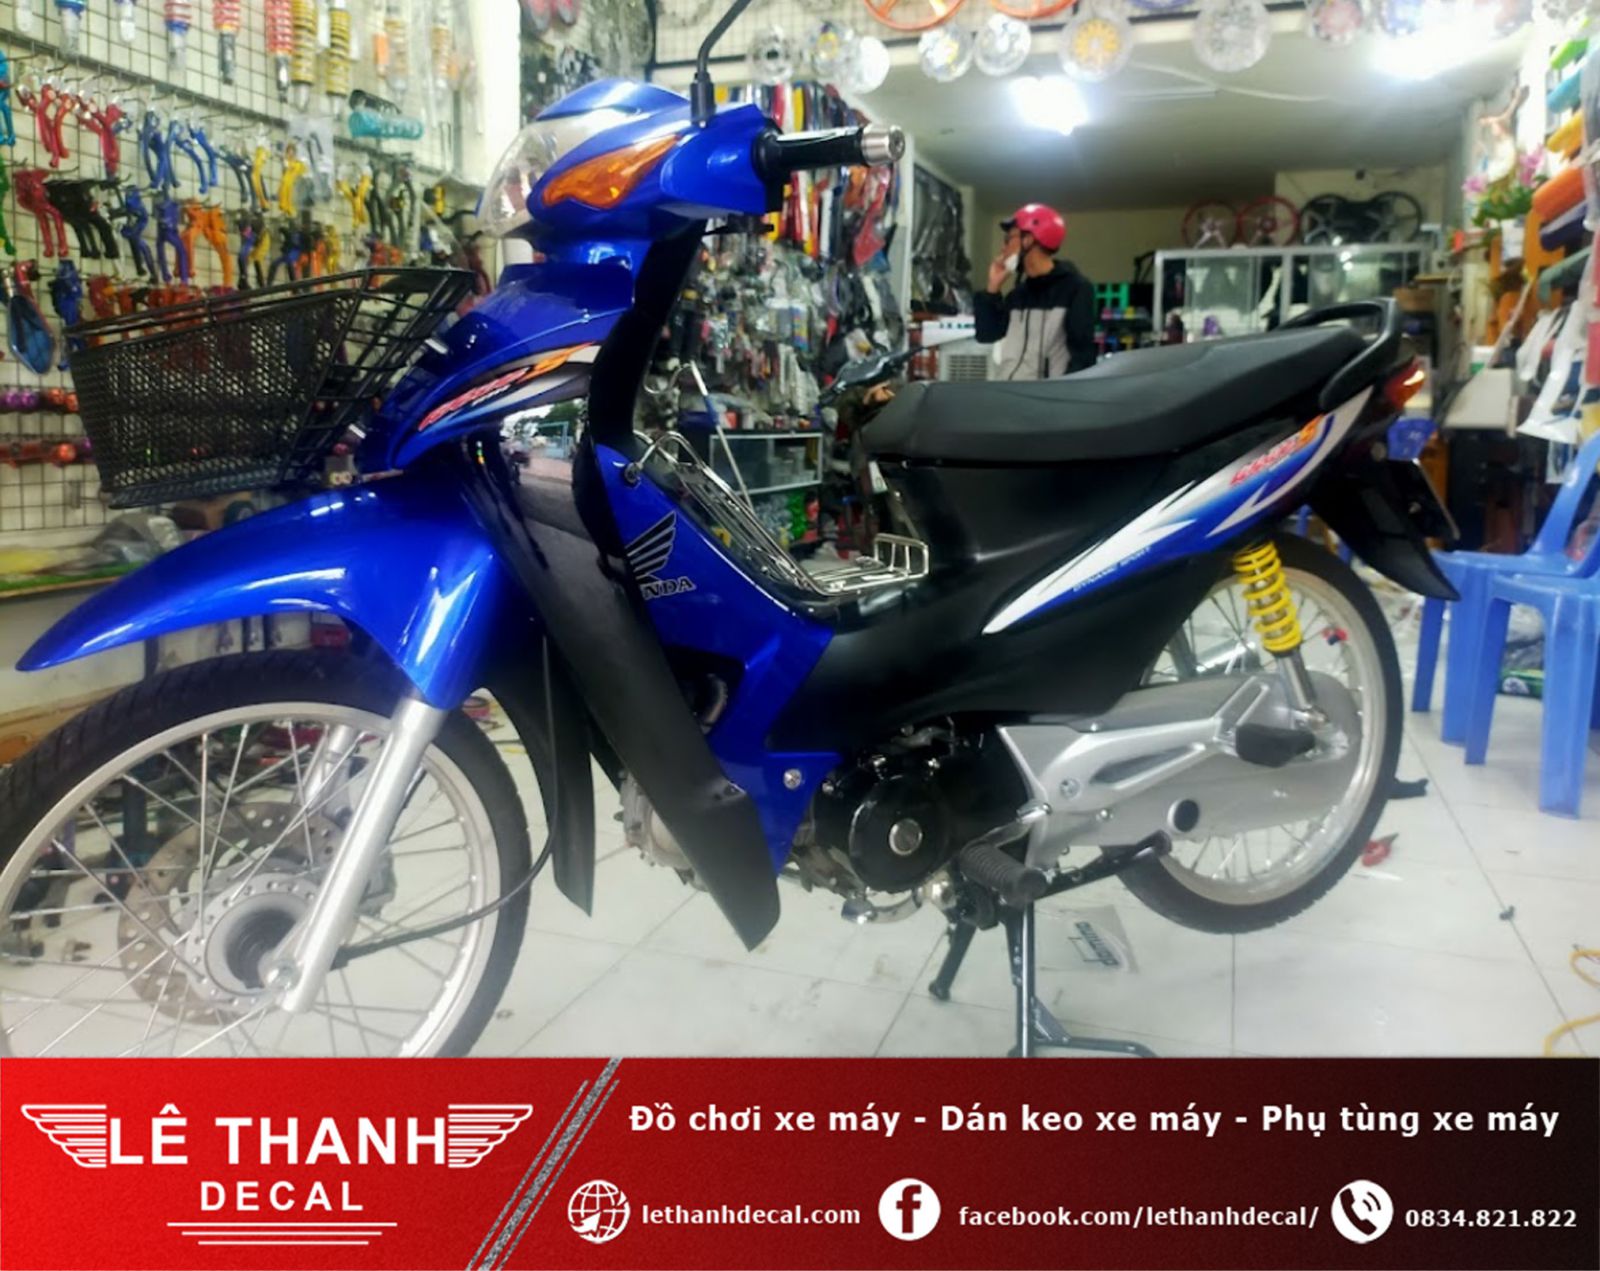 [TOP] 10+ tiệm dán decal xe máy tại huyện Củ Chi uy tín, chất lượng 2023 